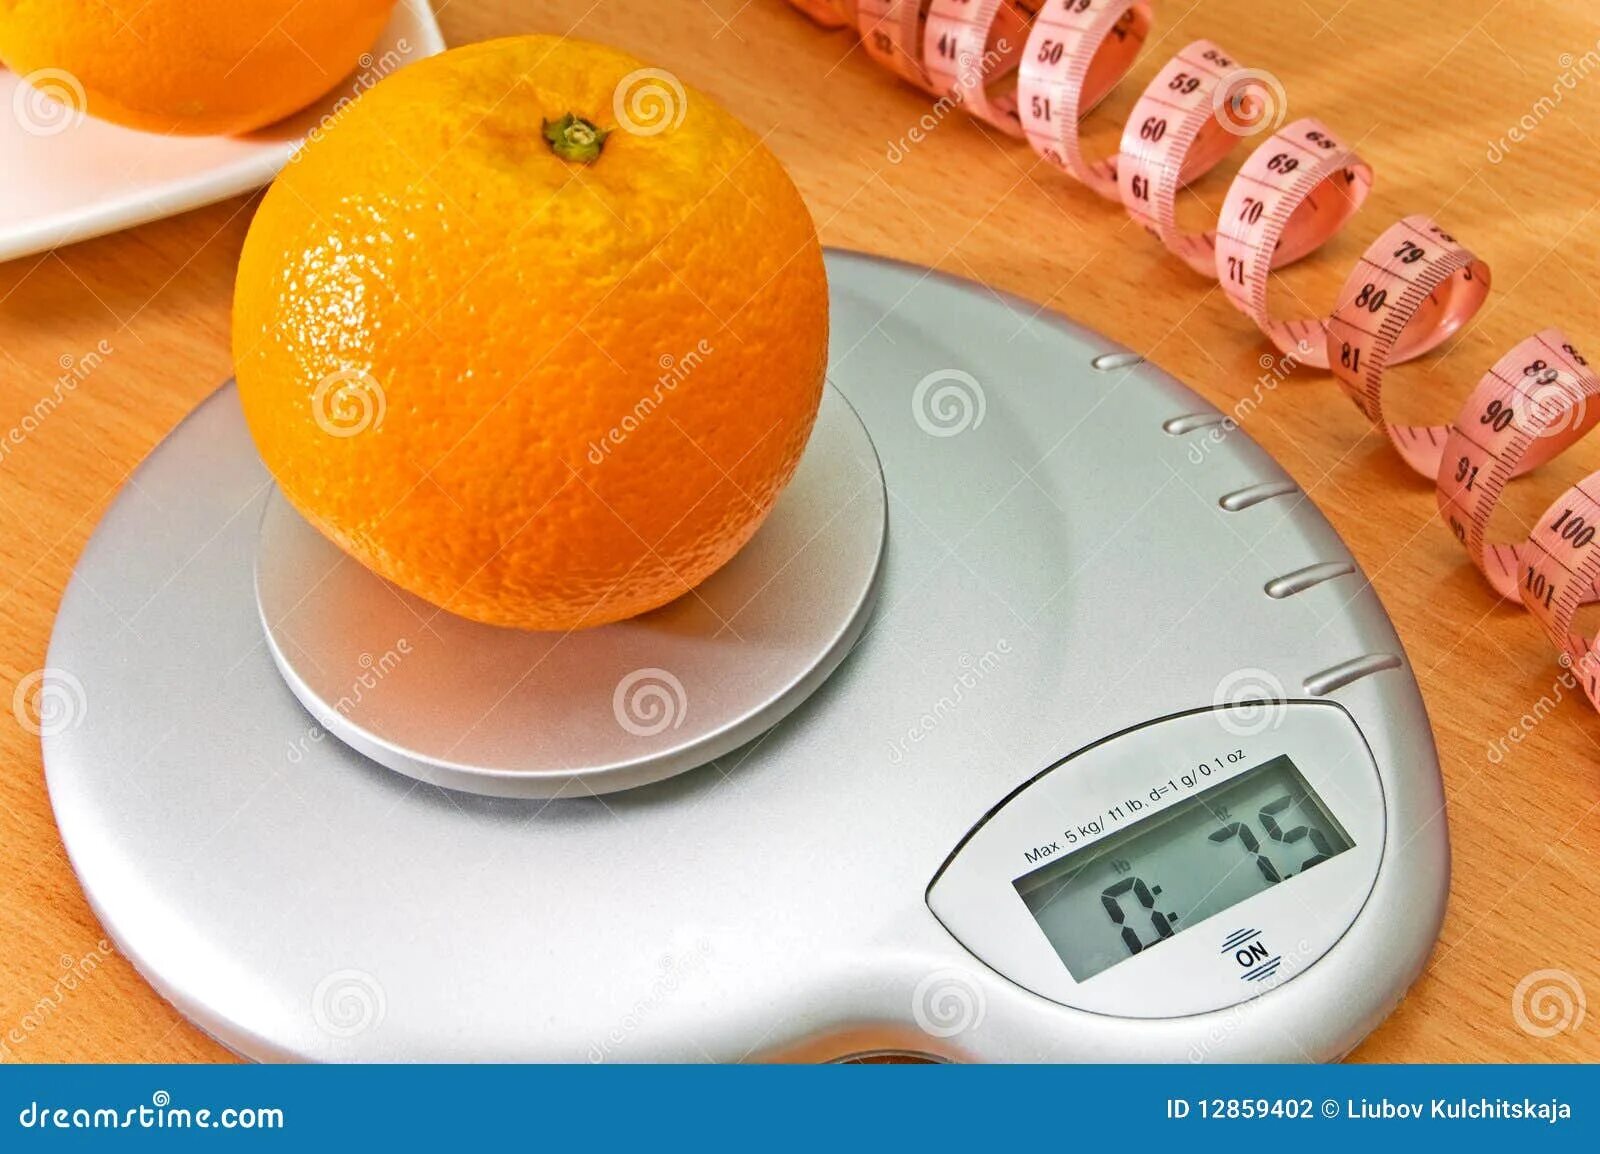 Вес кожуры апельсина. Апельсины, вес. Апельсин вес 1 шт без кожуры. Вес 1 апельсина без кожуры. Вес 1 апельсина.